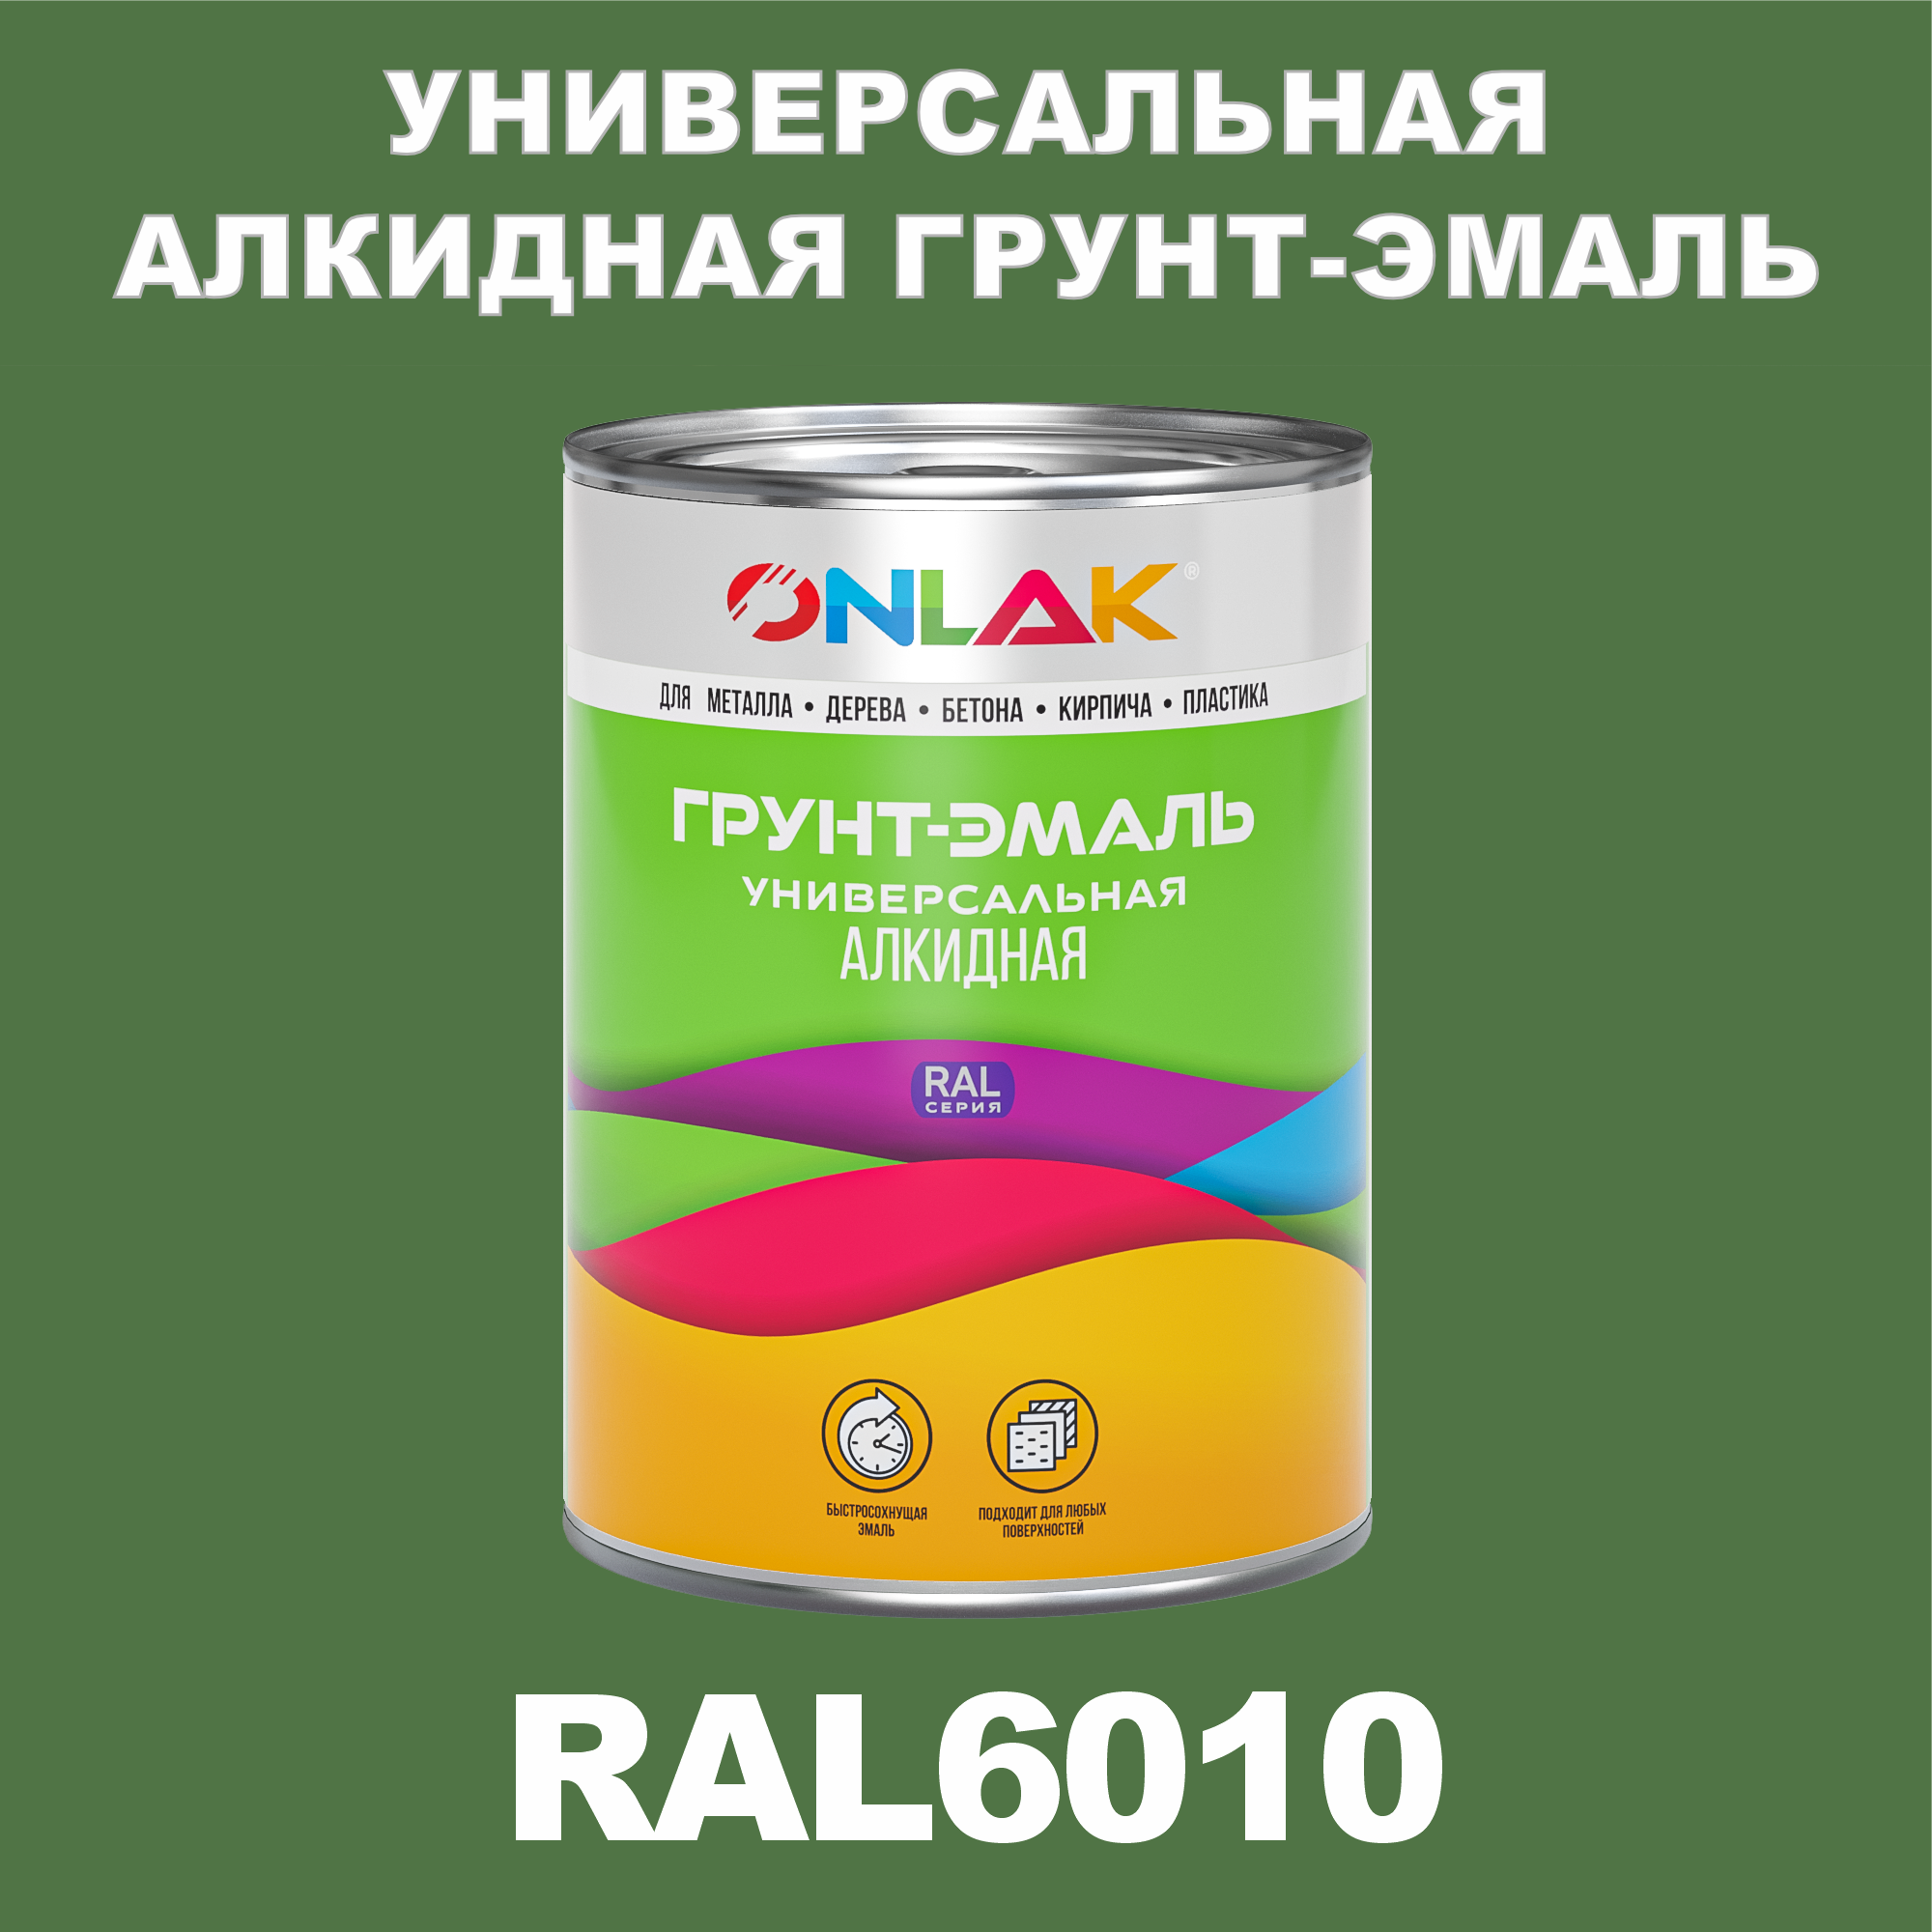 Грунт-эмаль ONLAK 1К RAL6010 антикоррозионная алкидная по металлу по ржавчине 1 кг грунт эмаль yollo по ржавчине алкидная серая 0 9 кг